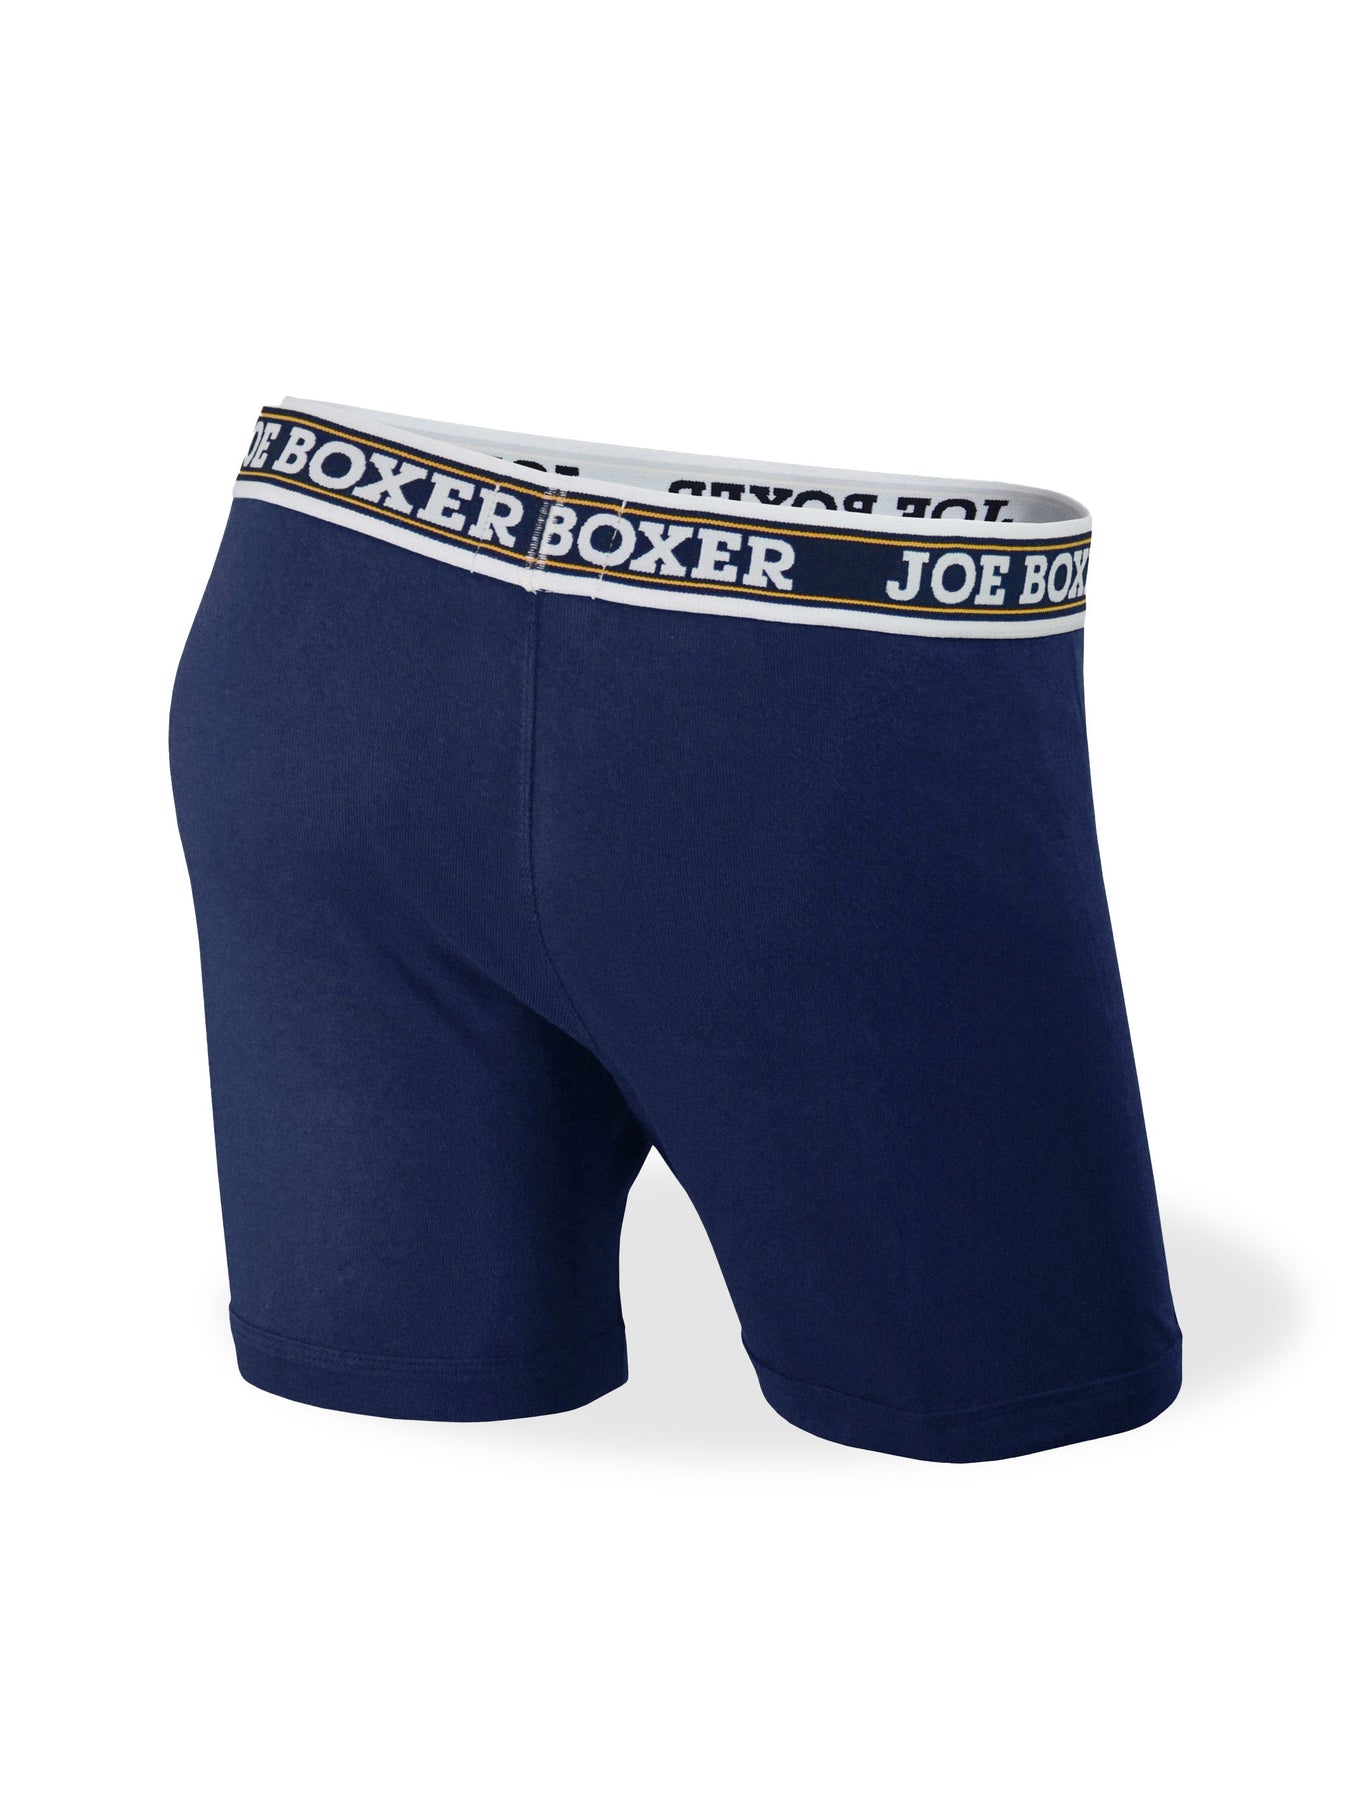 Gildan Boxer Briefs Cool Spire 6 Pack Multicolor Cotton NWT Men Size XL F8